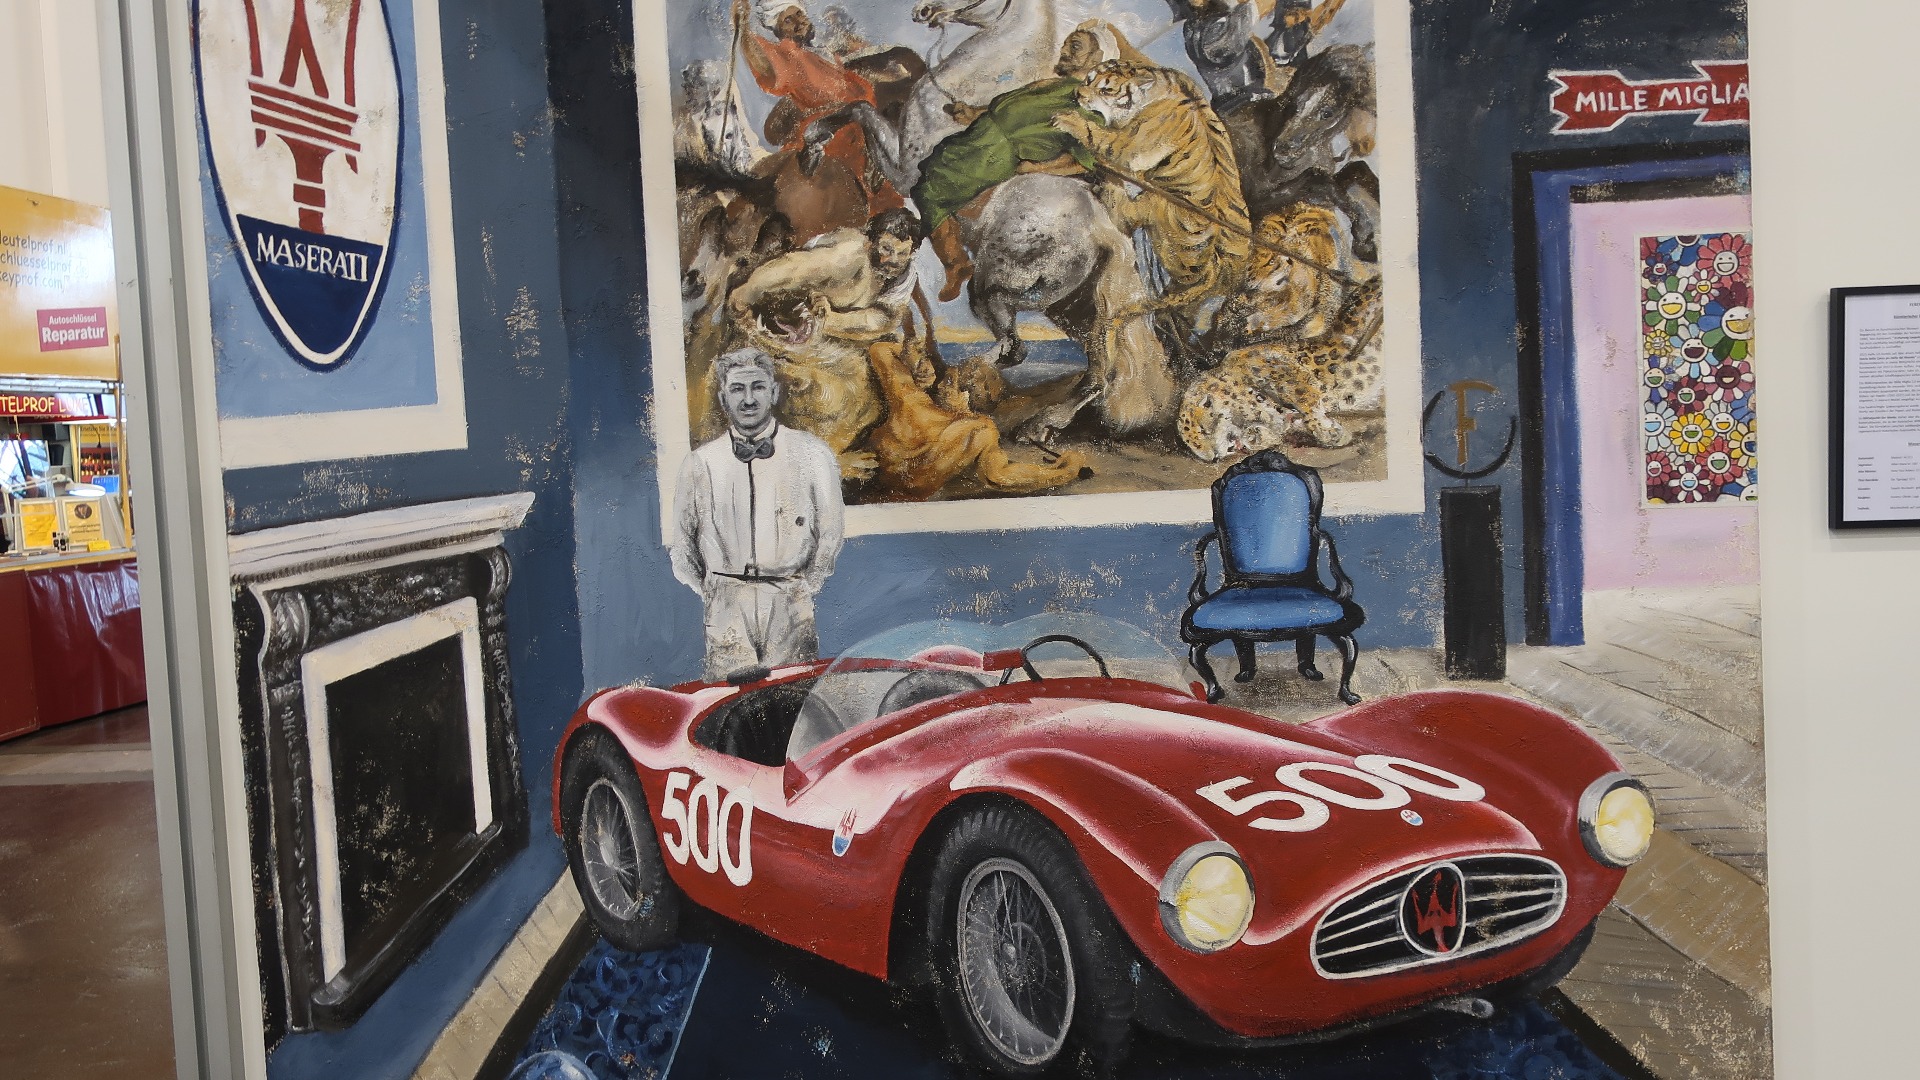 Her skjer det mye på en gang. Vi ser Alfieri Maserati i Mille Miglia 1954 og en Maserati A6 GCS, men kunstneren Ferencz Olivier har også blandet inn Peter Paul Rubens sitt maleri Tigerjakten fra 1615.